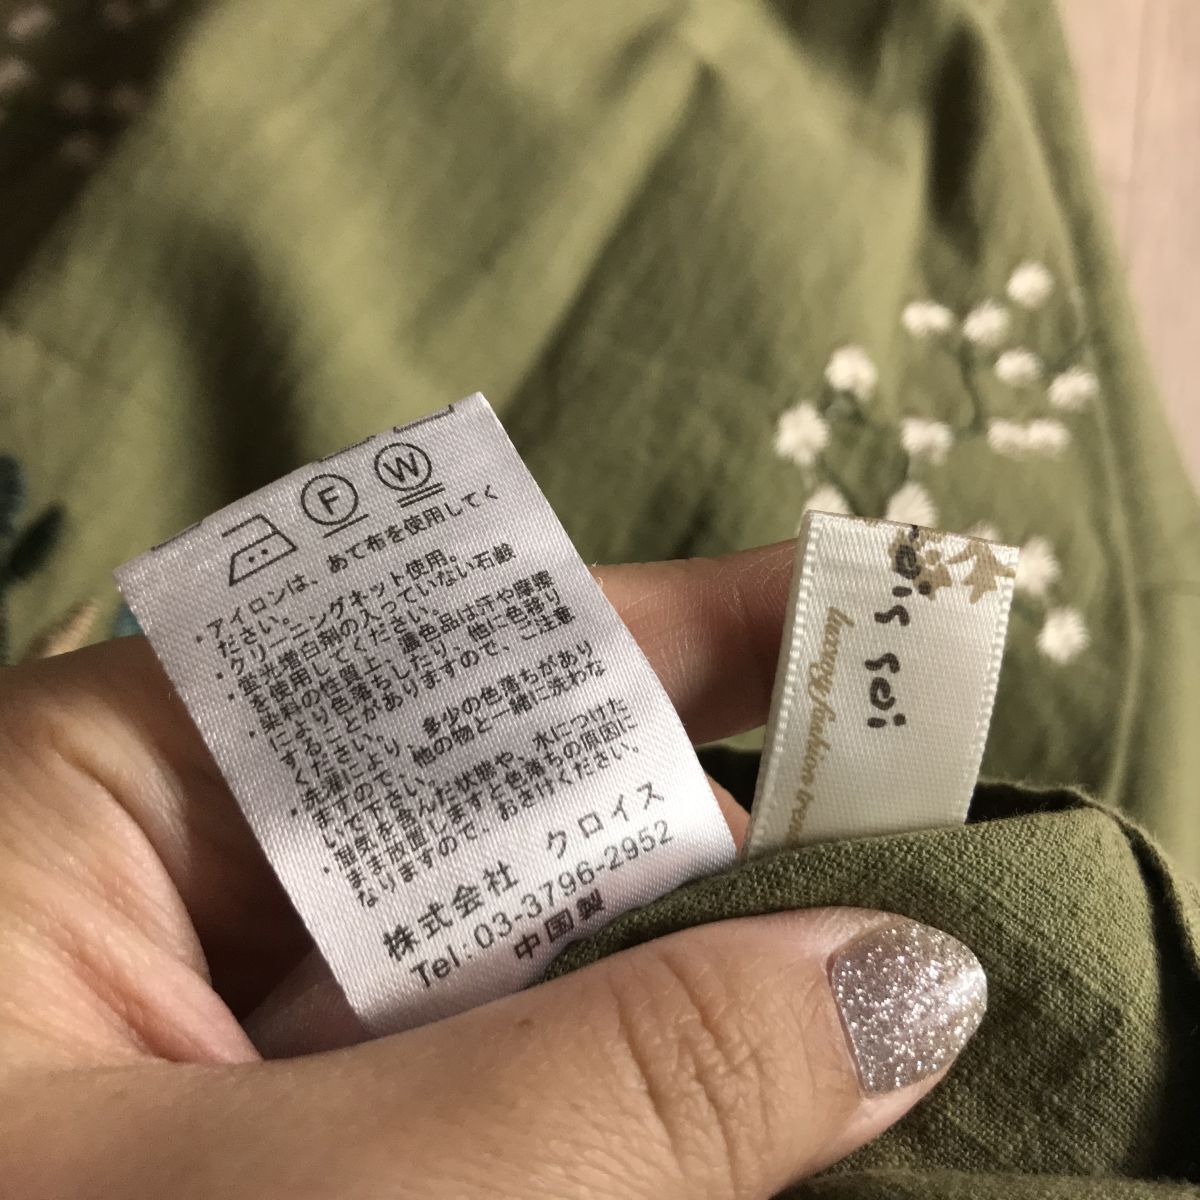 100 иен старт!k Lois вышивка дизайн ширина свободно body type покрытие туника One-piece оттенок зеленого 